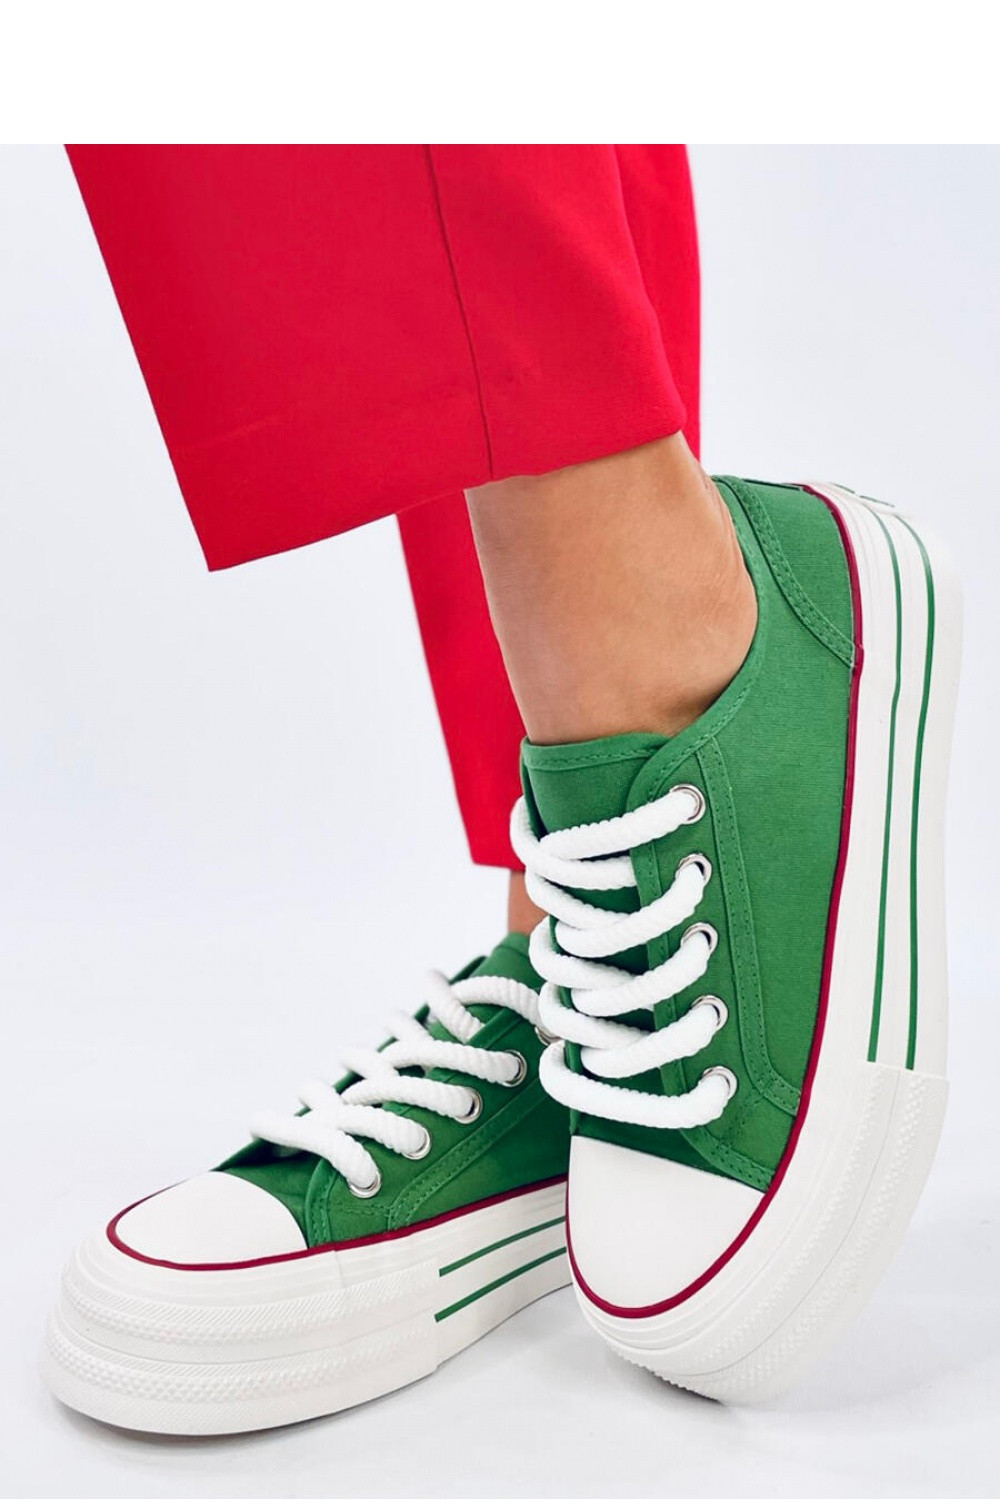 Dámská sportovní obuv BL506 Zelená s bílou - Seastar zeleno-bílá 39